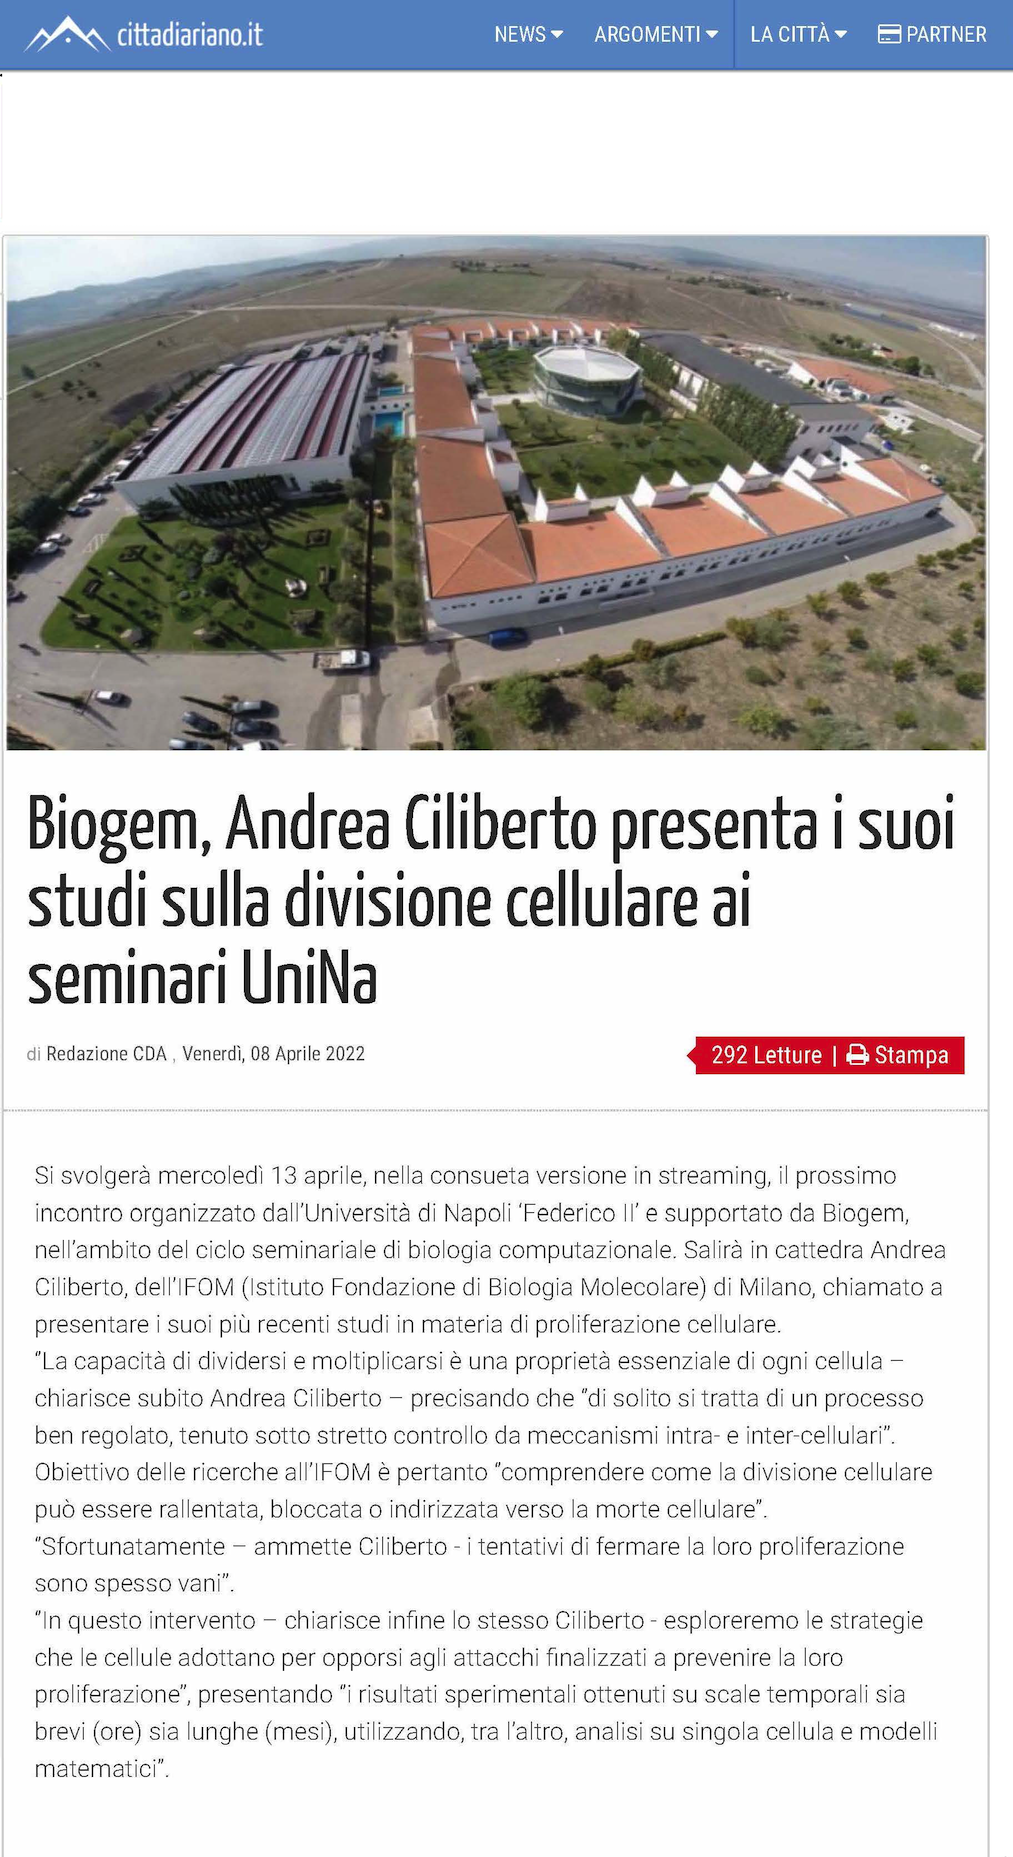 Biogem, Andrea Ciliberto presenta i suoi studi sulla divisione cellulare ai seminari UniNa